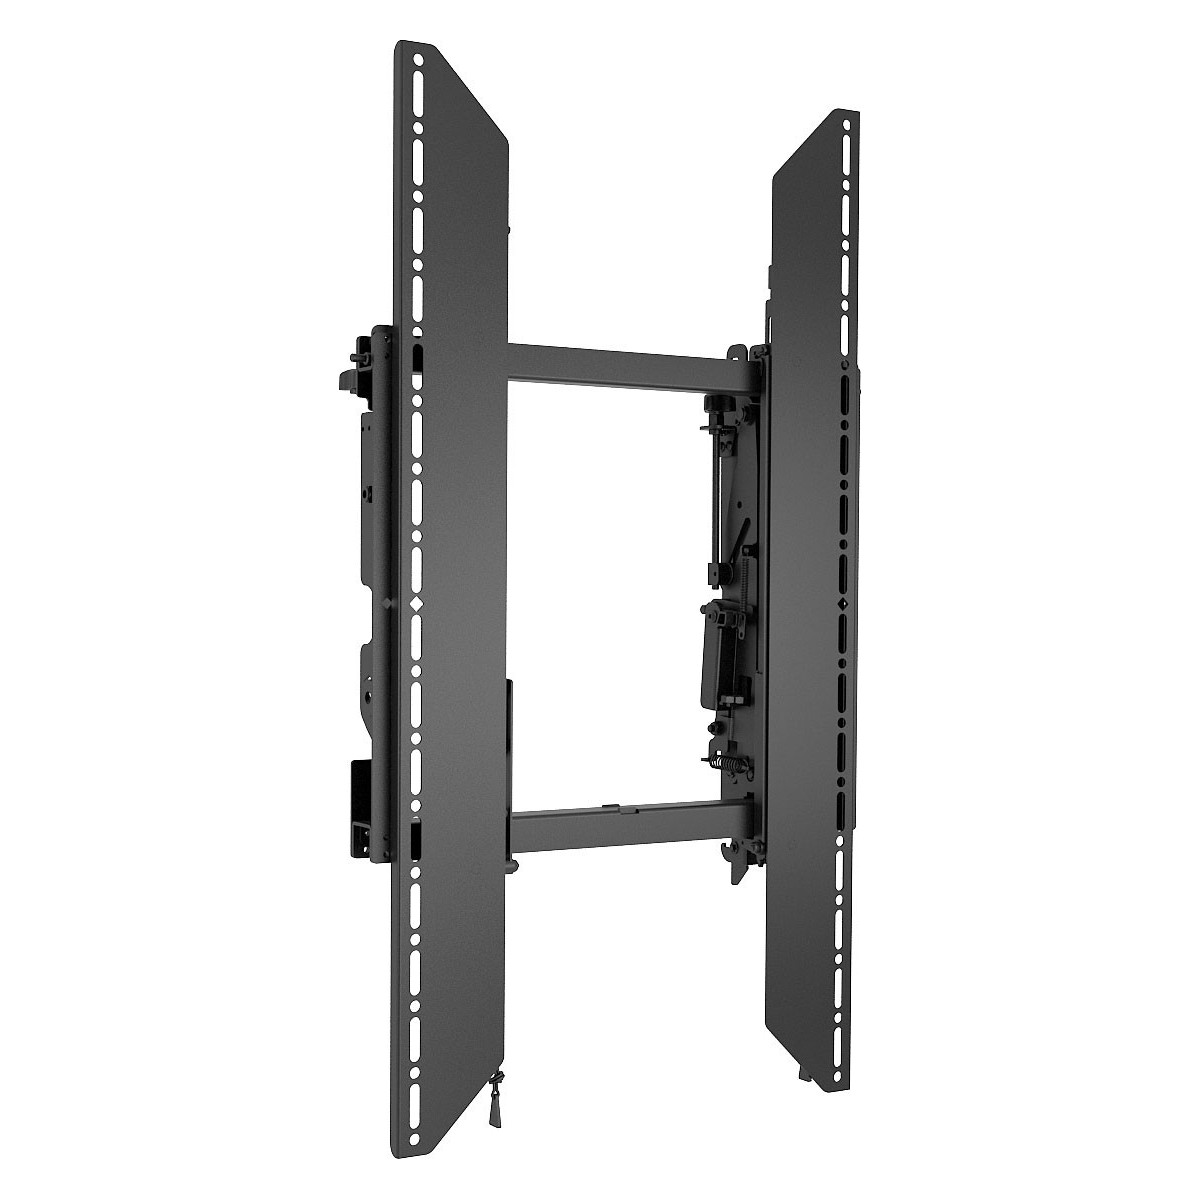 LVSXUP Sistema de montaje video wall ConnexSys apaisado sin railes extensión 34cm (40-80")